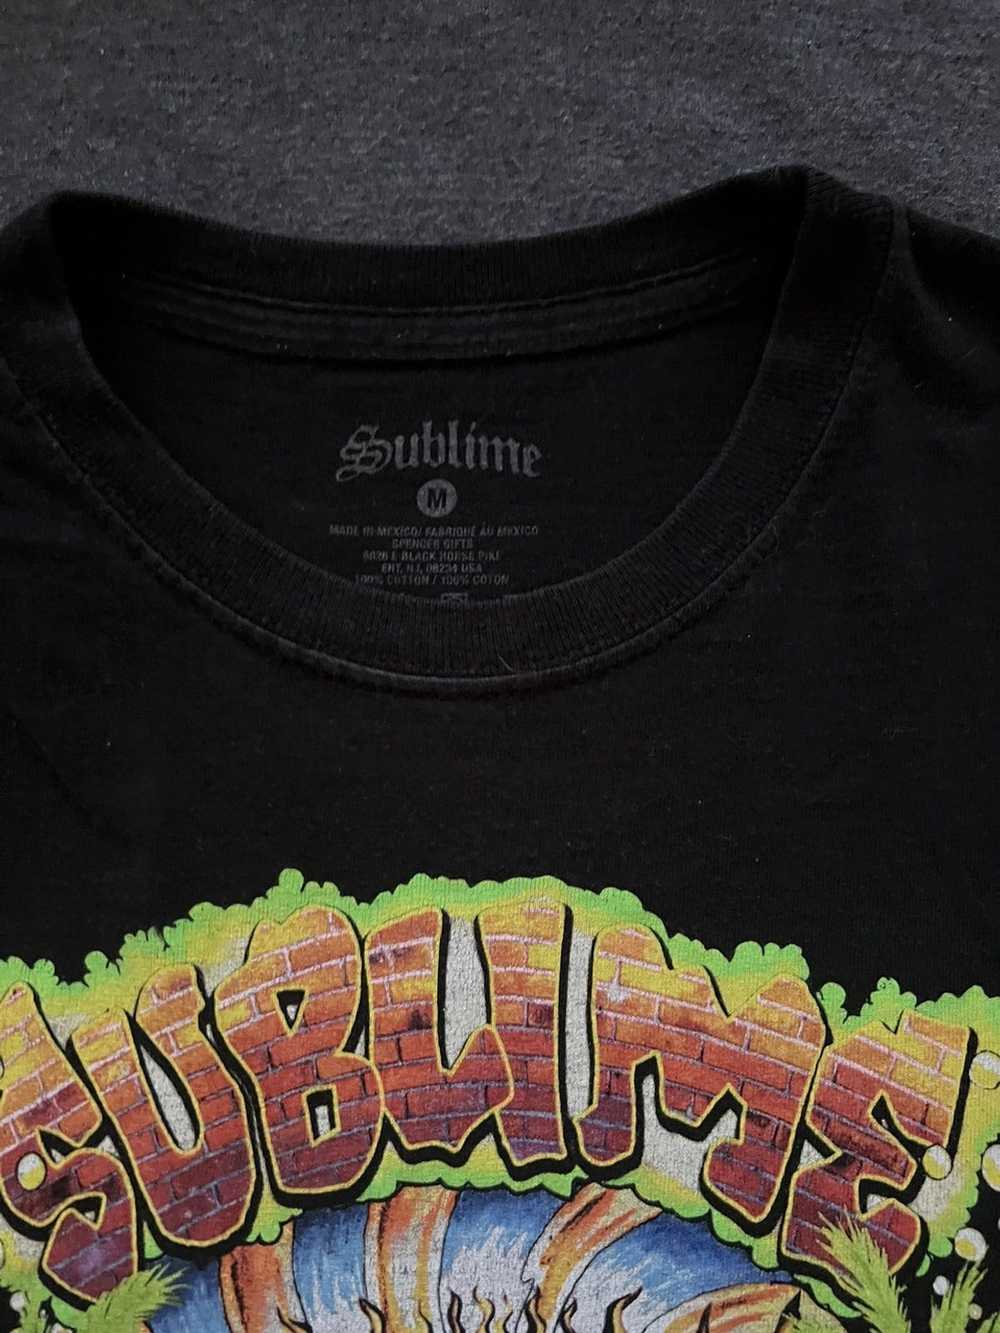 Sublime Sublime band tshirt size medium - image 2